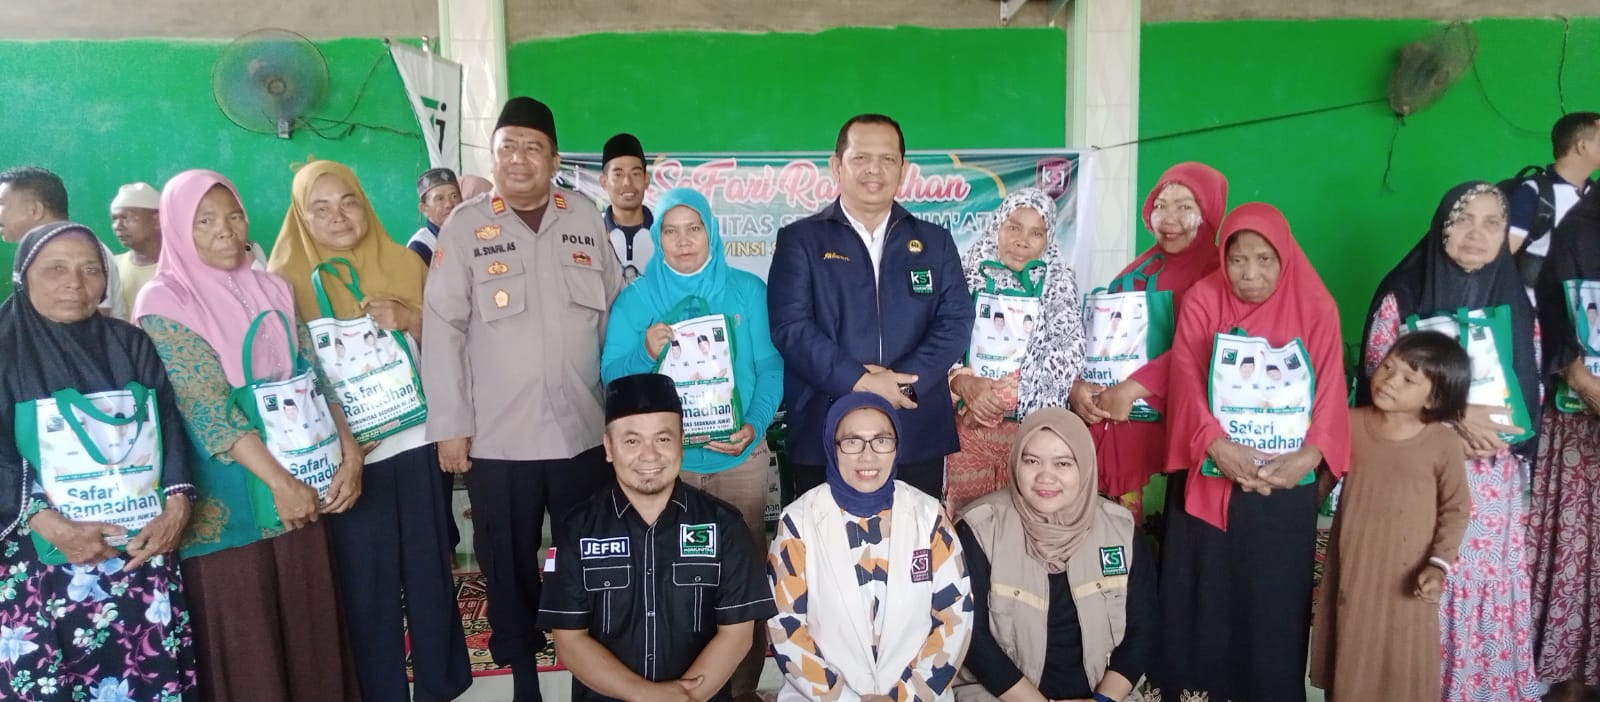 Pendiri/Pembina KSJ Berikan Sembako dan Nasi Kotak Kepada PKL di Kota Madang Deras